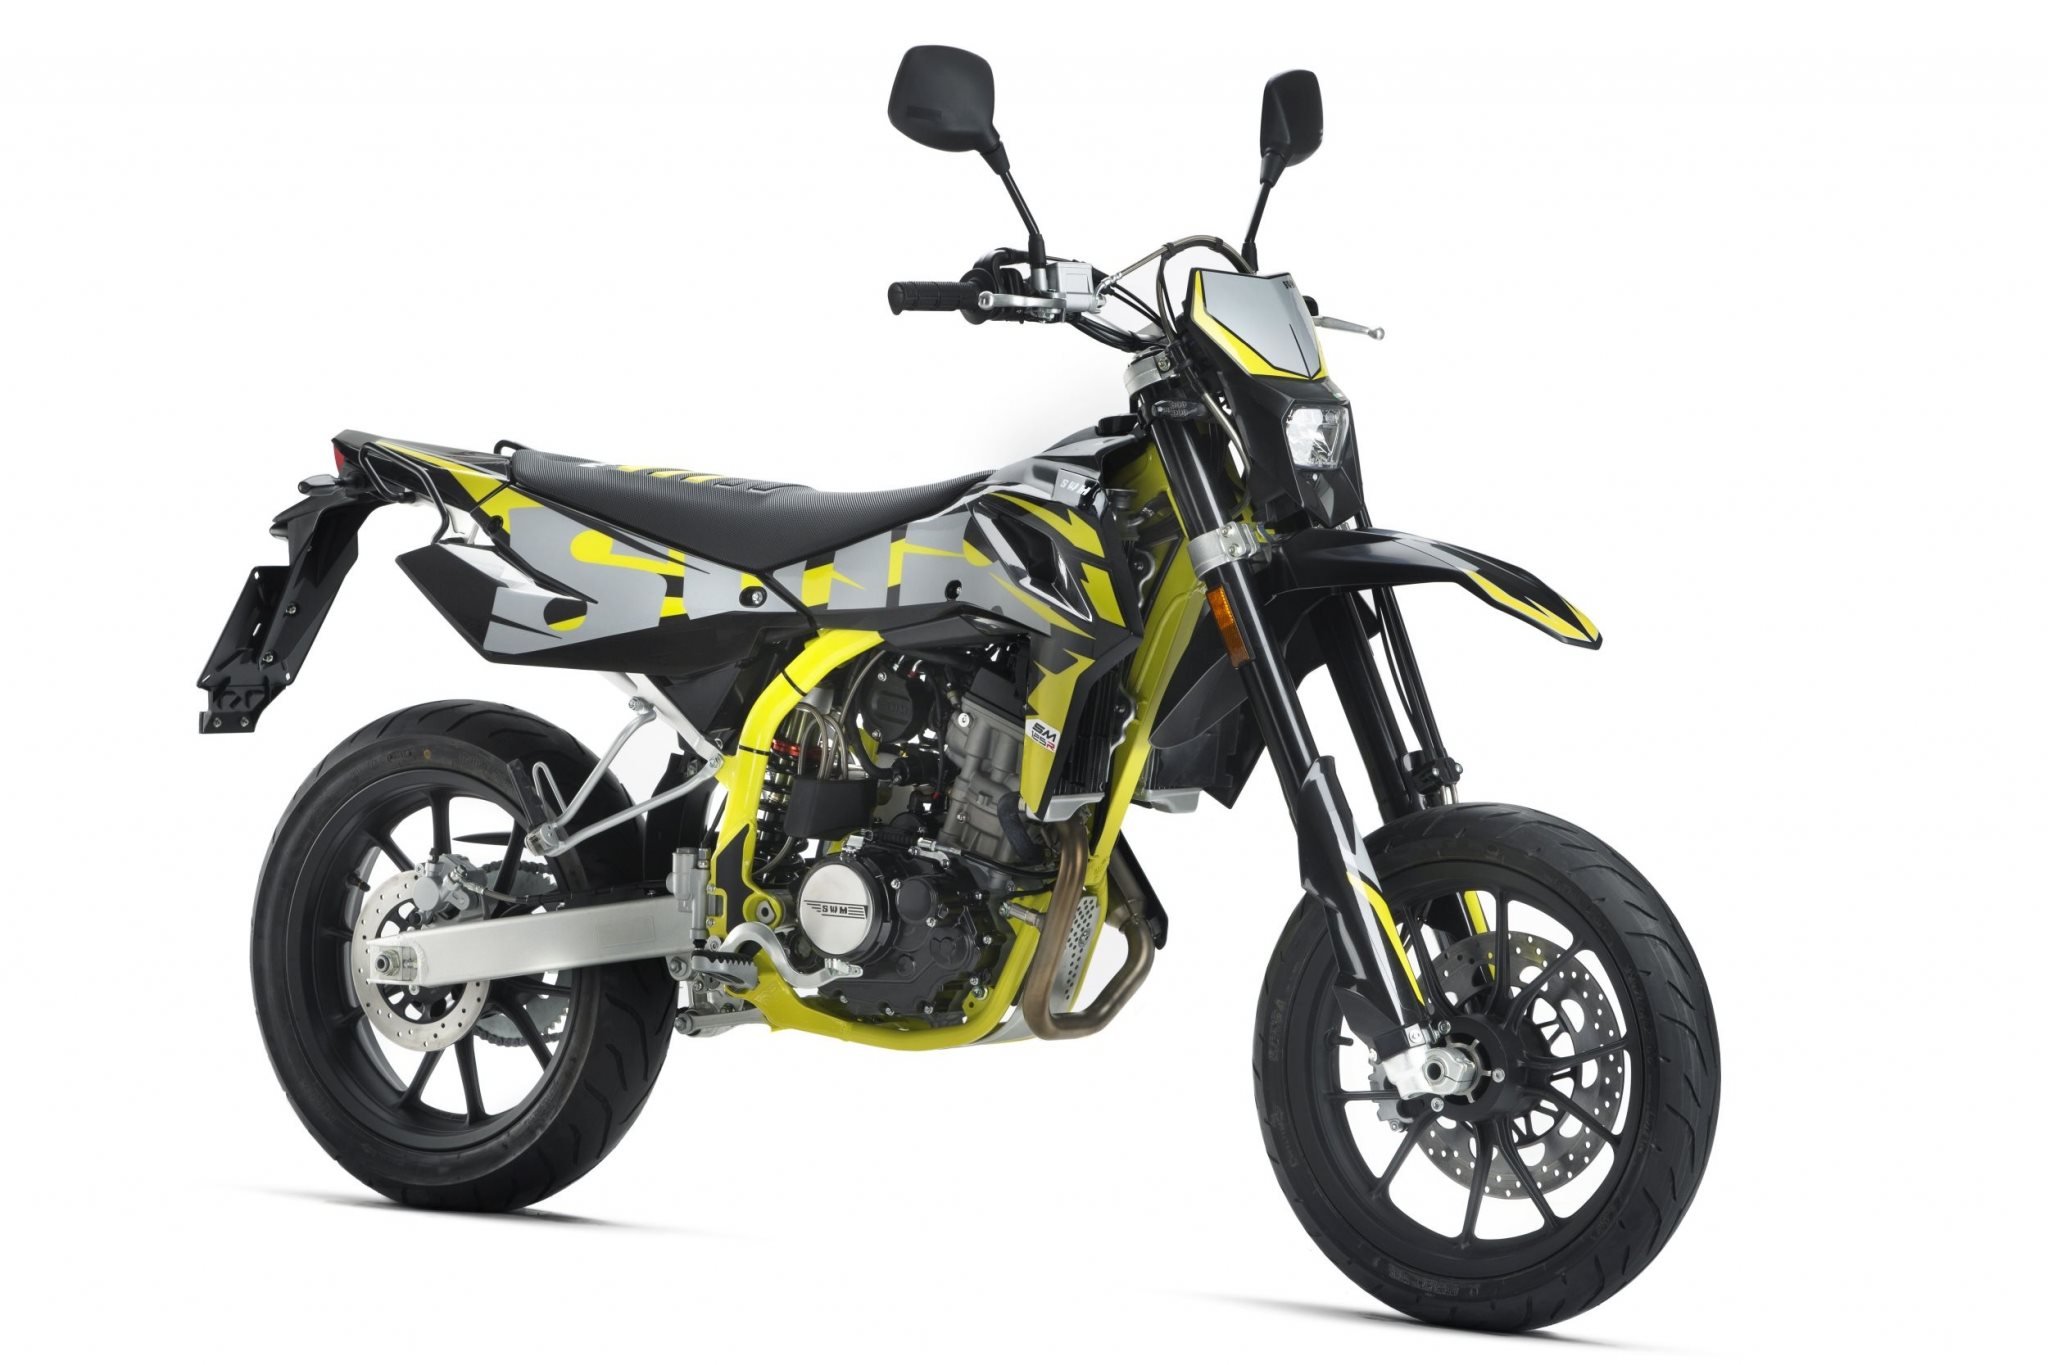 Gebrauchte und neue SWM SM 125 R Motorräder kaufen